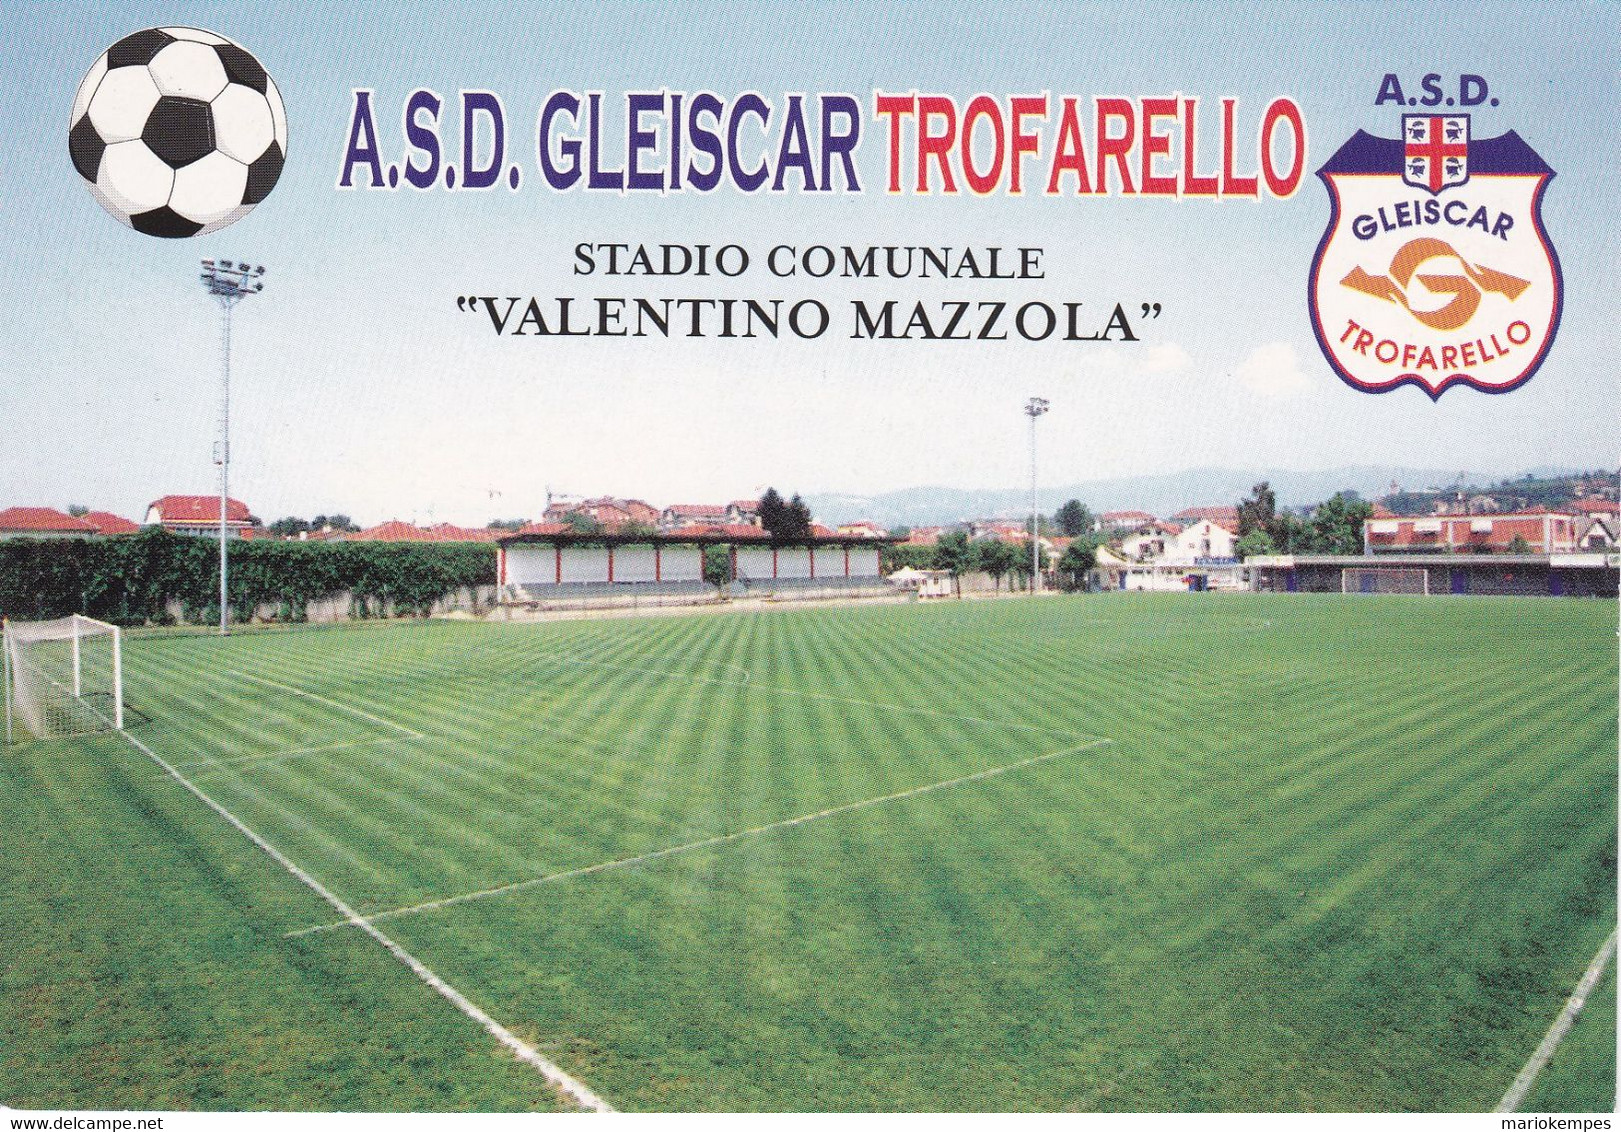 TROFARELLO (TO)_A.S.GLEISCAR TROFARELLO_STADIO COMUNALE "VALENTINO MAZZOLA"_Stadium_Stade_Estadio_Stadion - Stadiums & Sporting Infrastructures